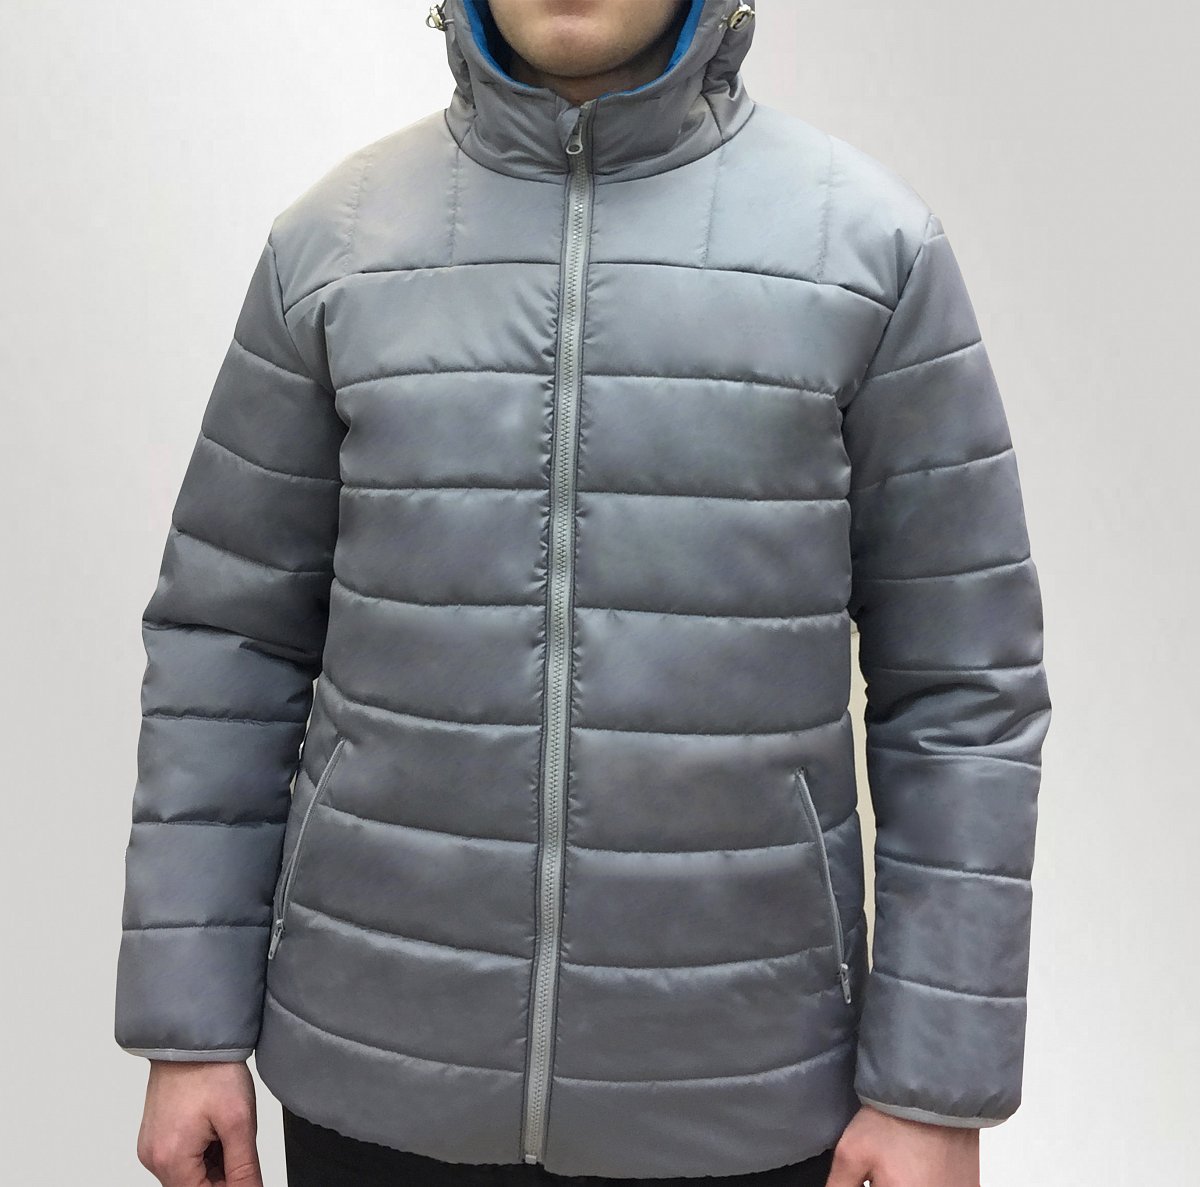 Пошив курток на заказ - пример модели куртка зимняя мужская